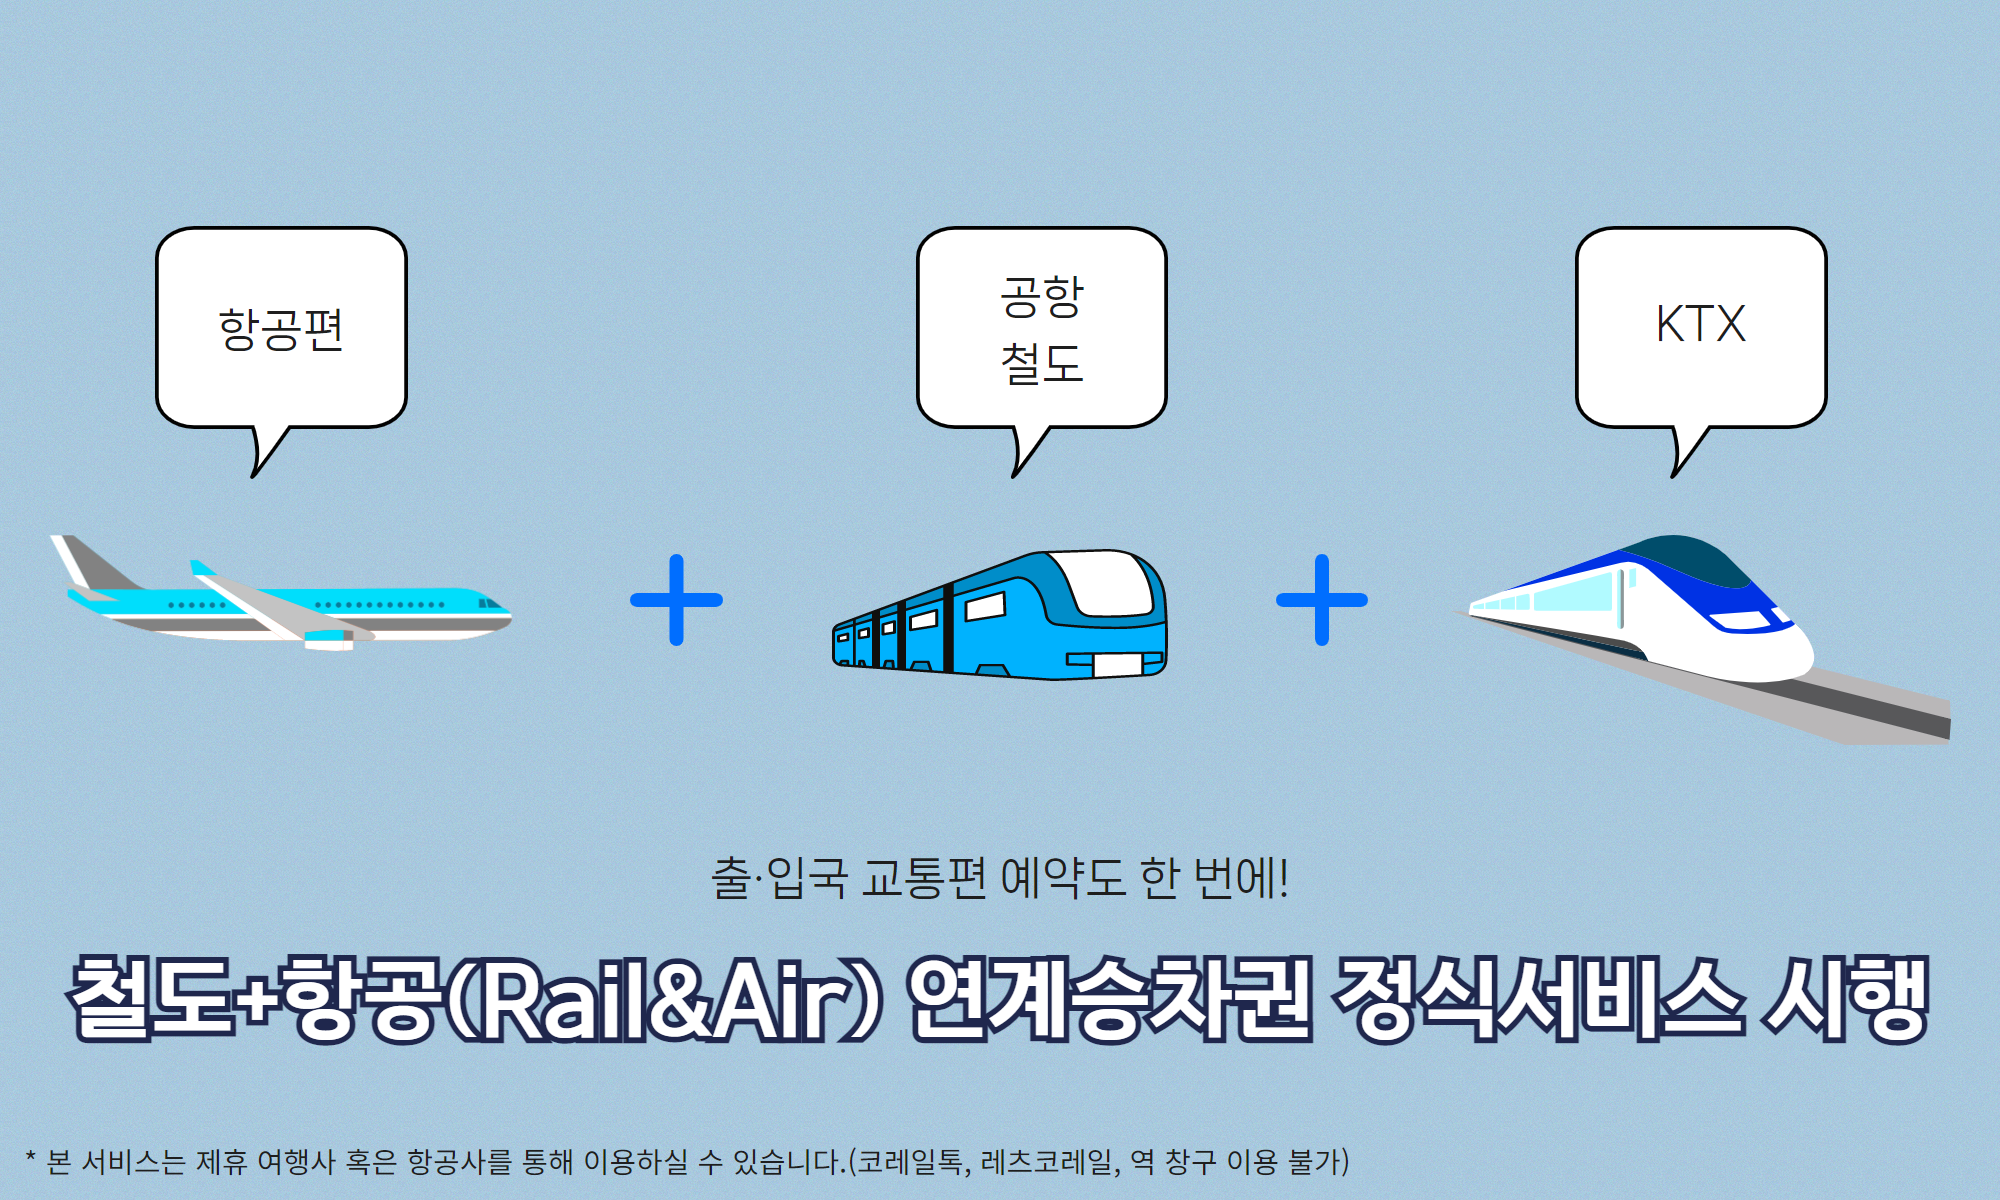 철도+항공(Rail&Air) 연계승차권 서비스 정식 운영 전환!